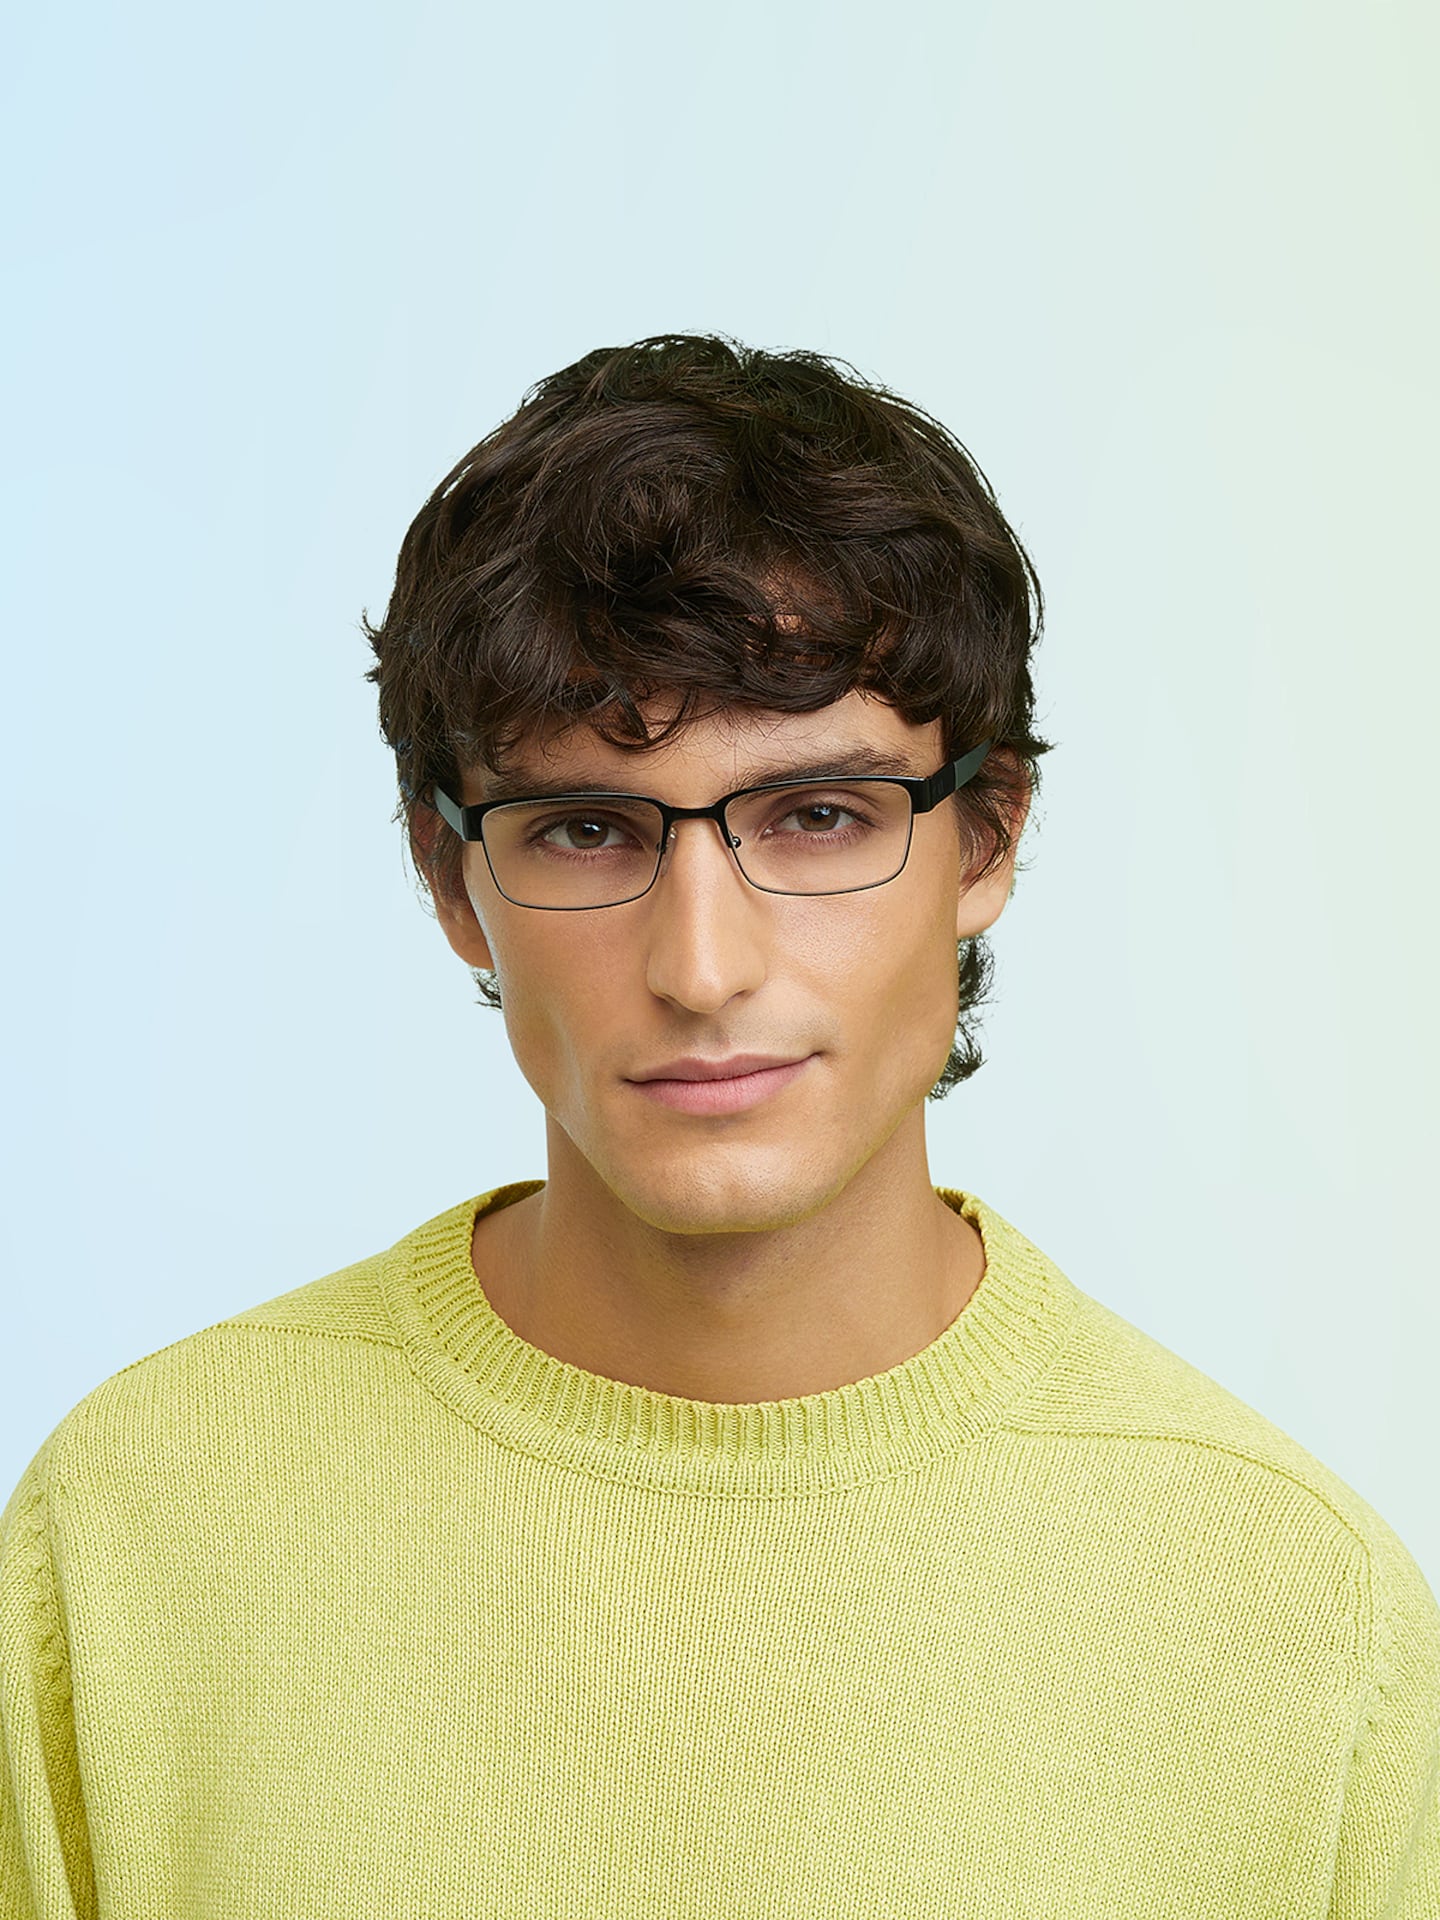 Armani Exchange Shiny Black Eyeglasses | Glasses.com® | Free Shipping